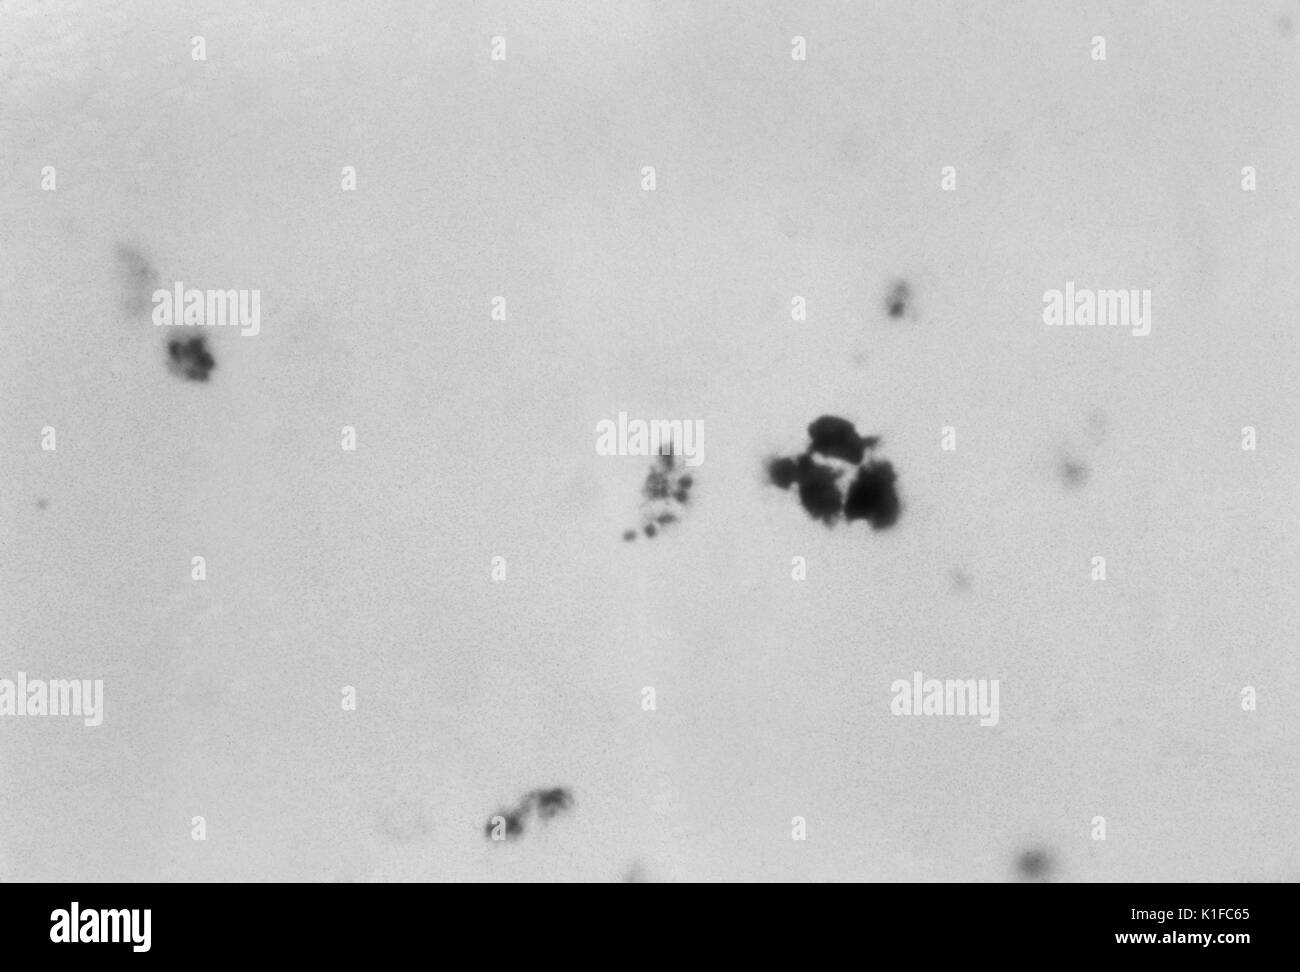 Plasmodiumsorten, reifer schizont, wenig Zytoplasma ist sichtbar um das Chromatiert Massen von merozoiten. Auch gibt es eine wachsende trophozoite und drei presegmenters sowie eine weiße Blutkörperchen. Malariaparasiten. Bild mit freundlicher Genehmigung von CDC/Dr. N.J. Wheeler, Jr, 1963. Stockfoto